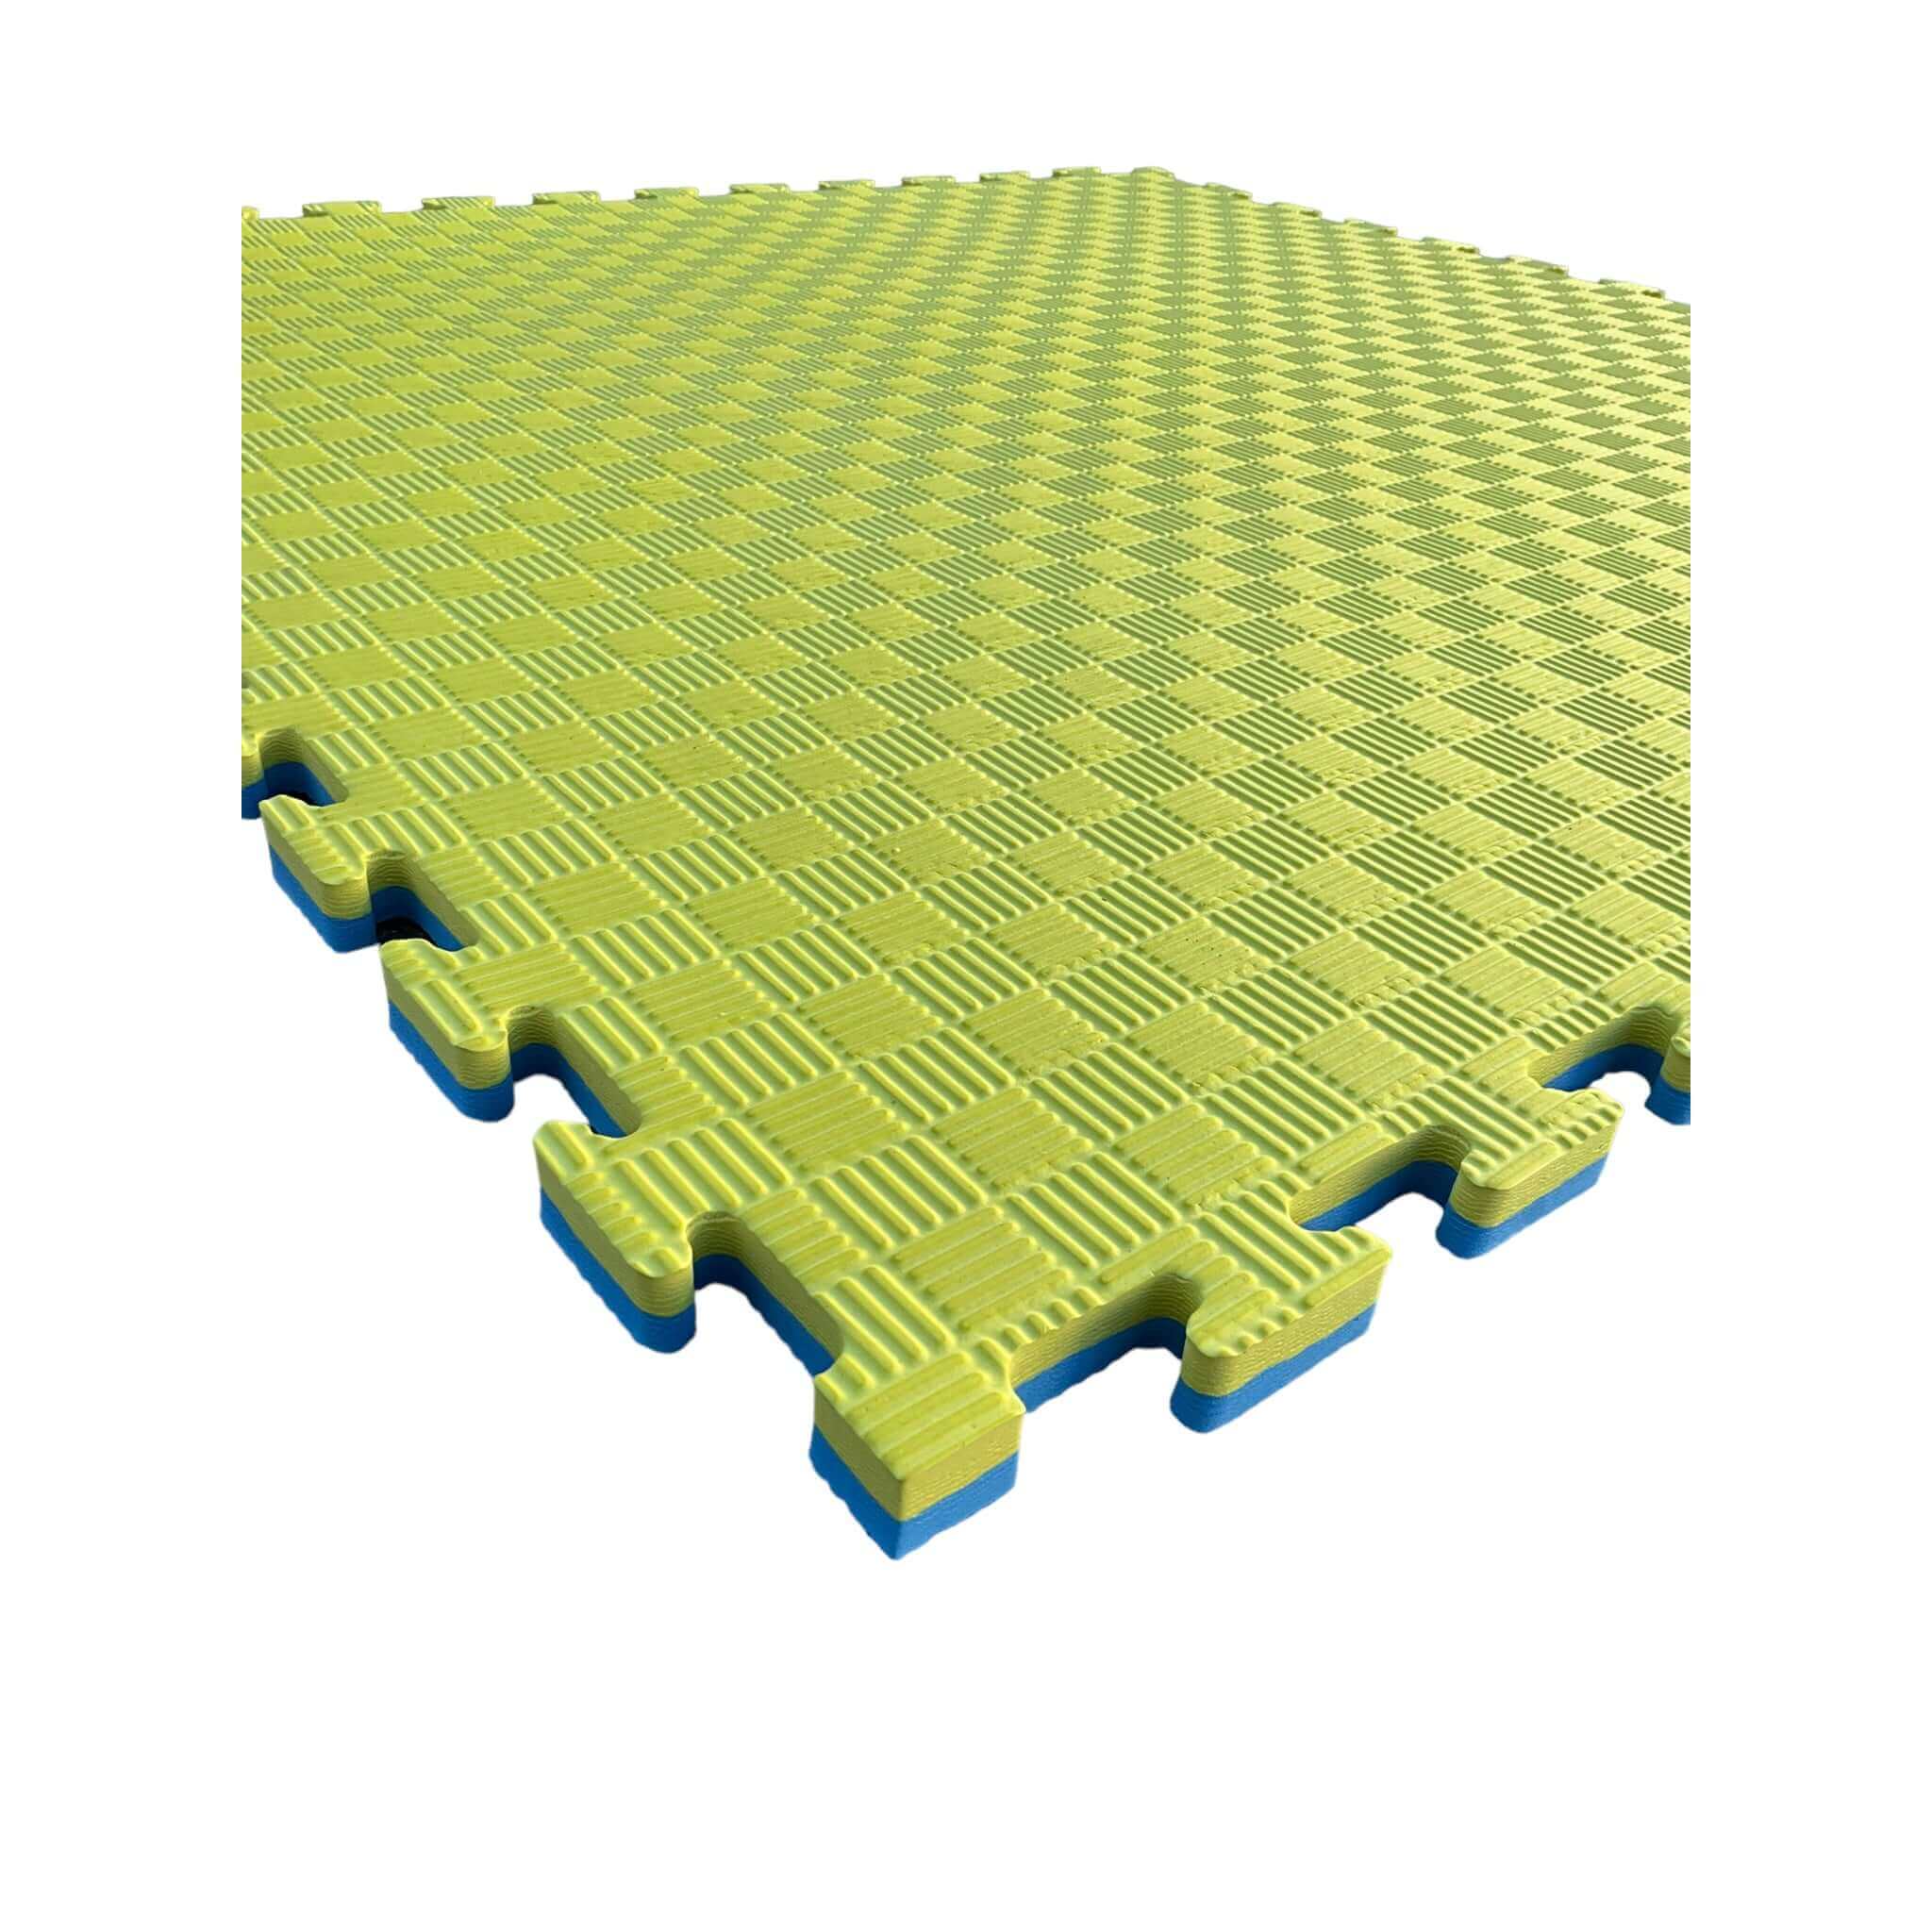 Pack of 5 - 20mm EVA Foam Jigsaw Interlocking Floor Tile Mat 1m x 1m BLUE / YELLOW | INSOURCE